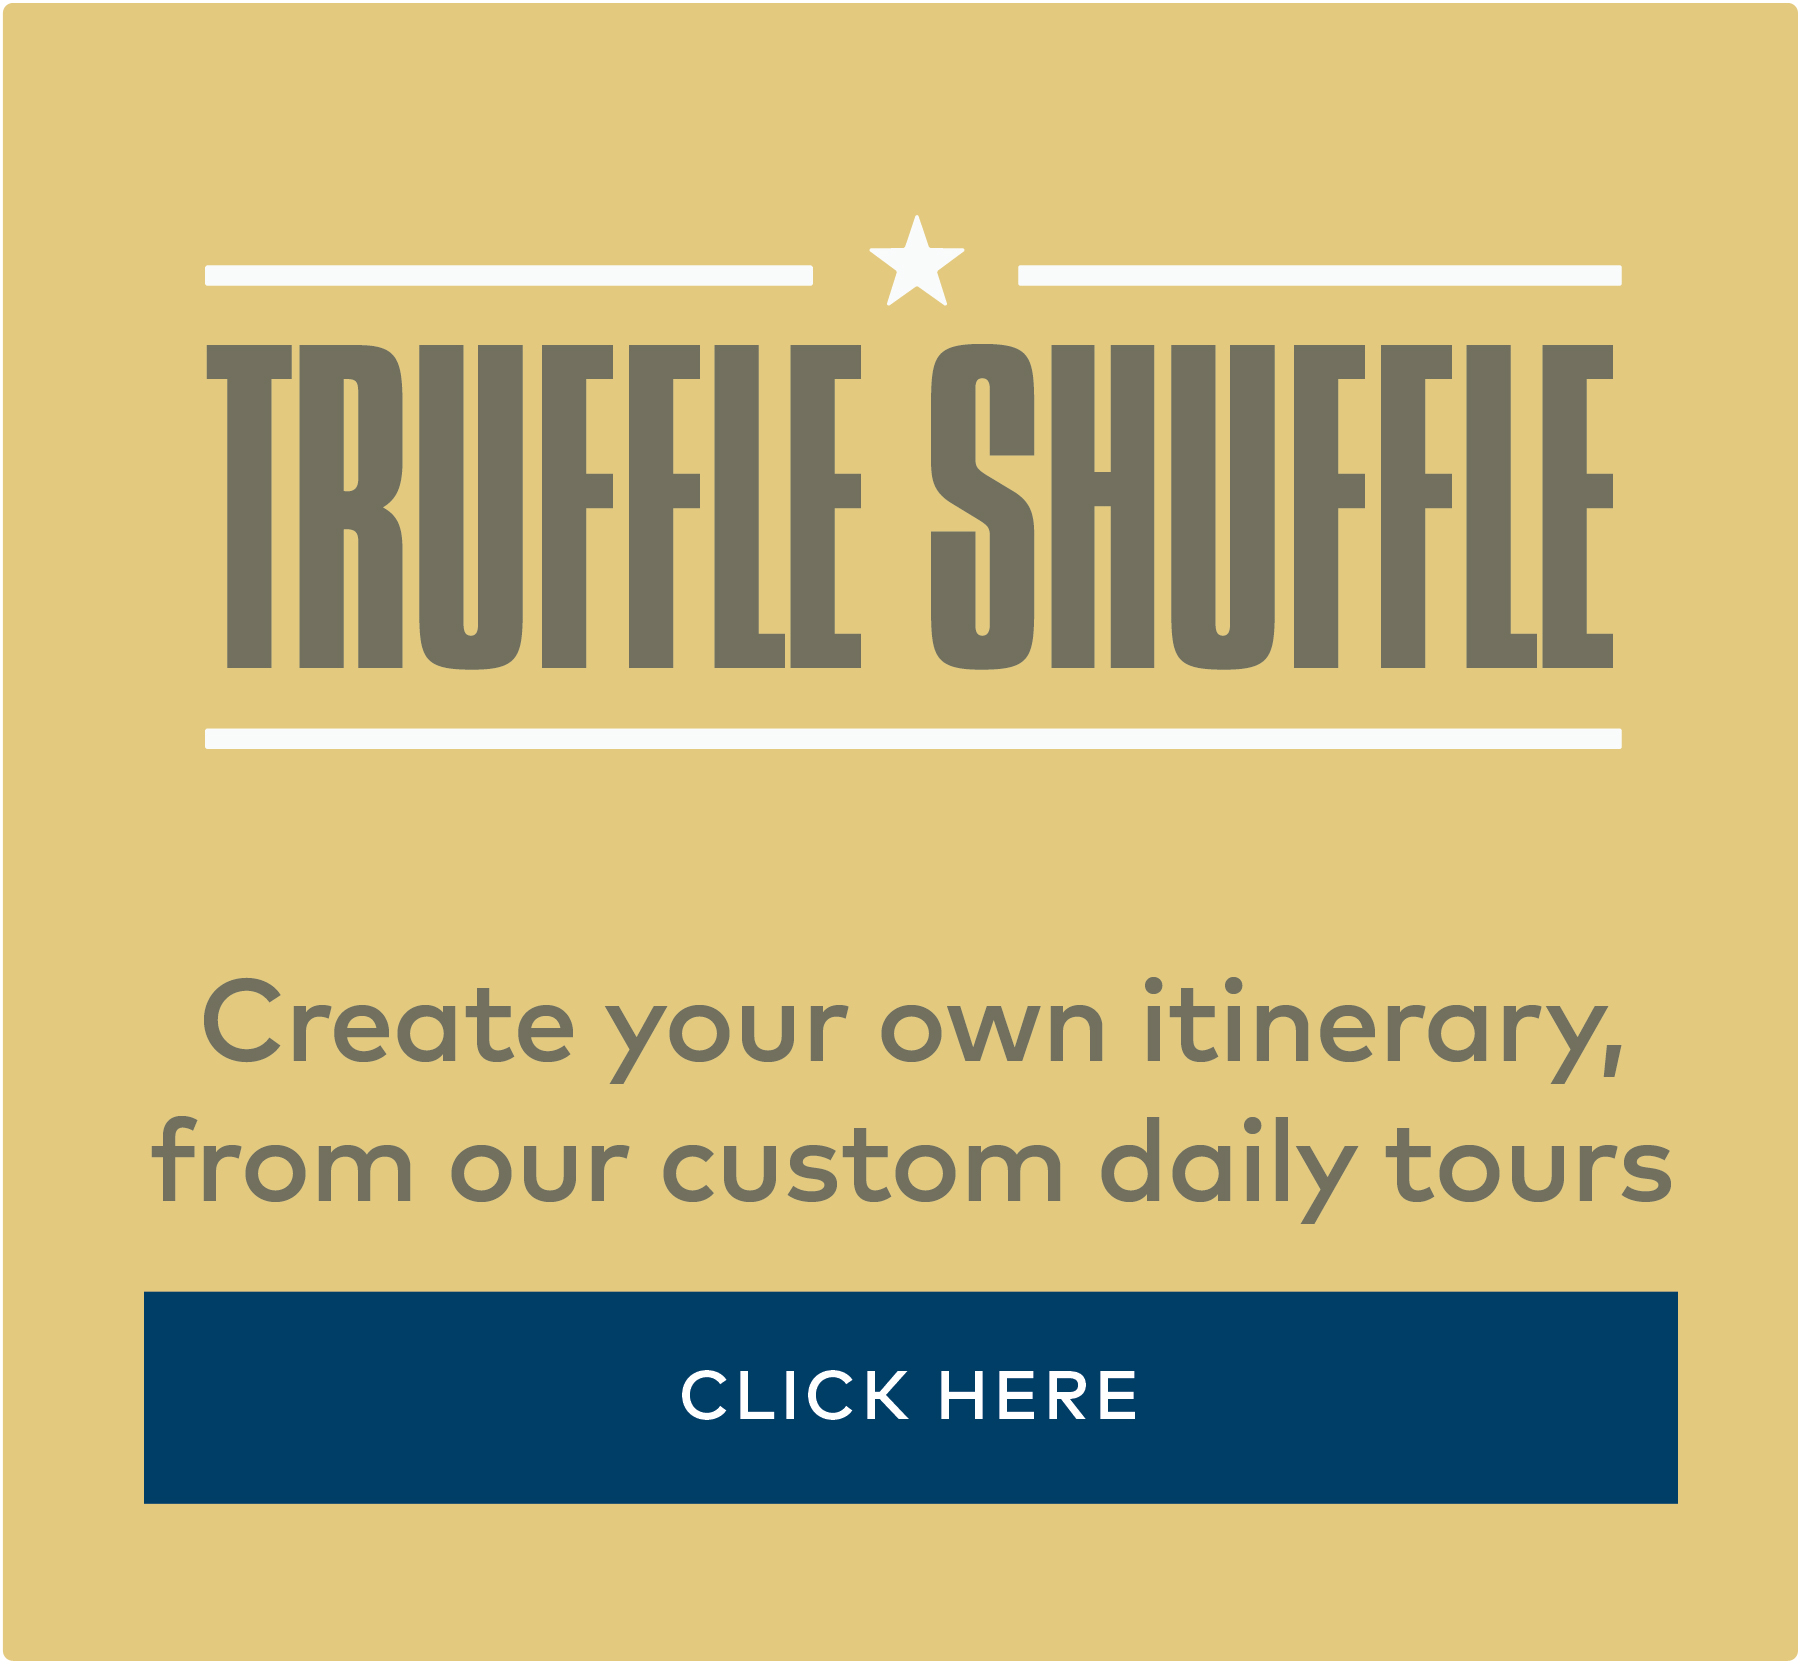 Truffle Shuffle Side Banner 2